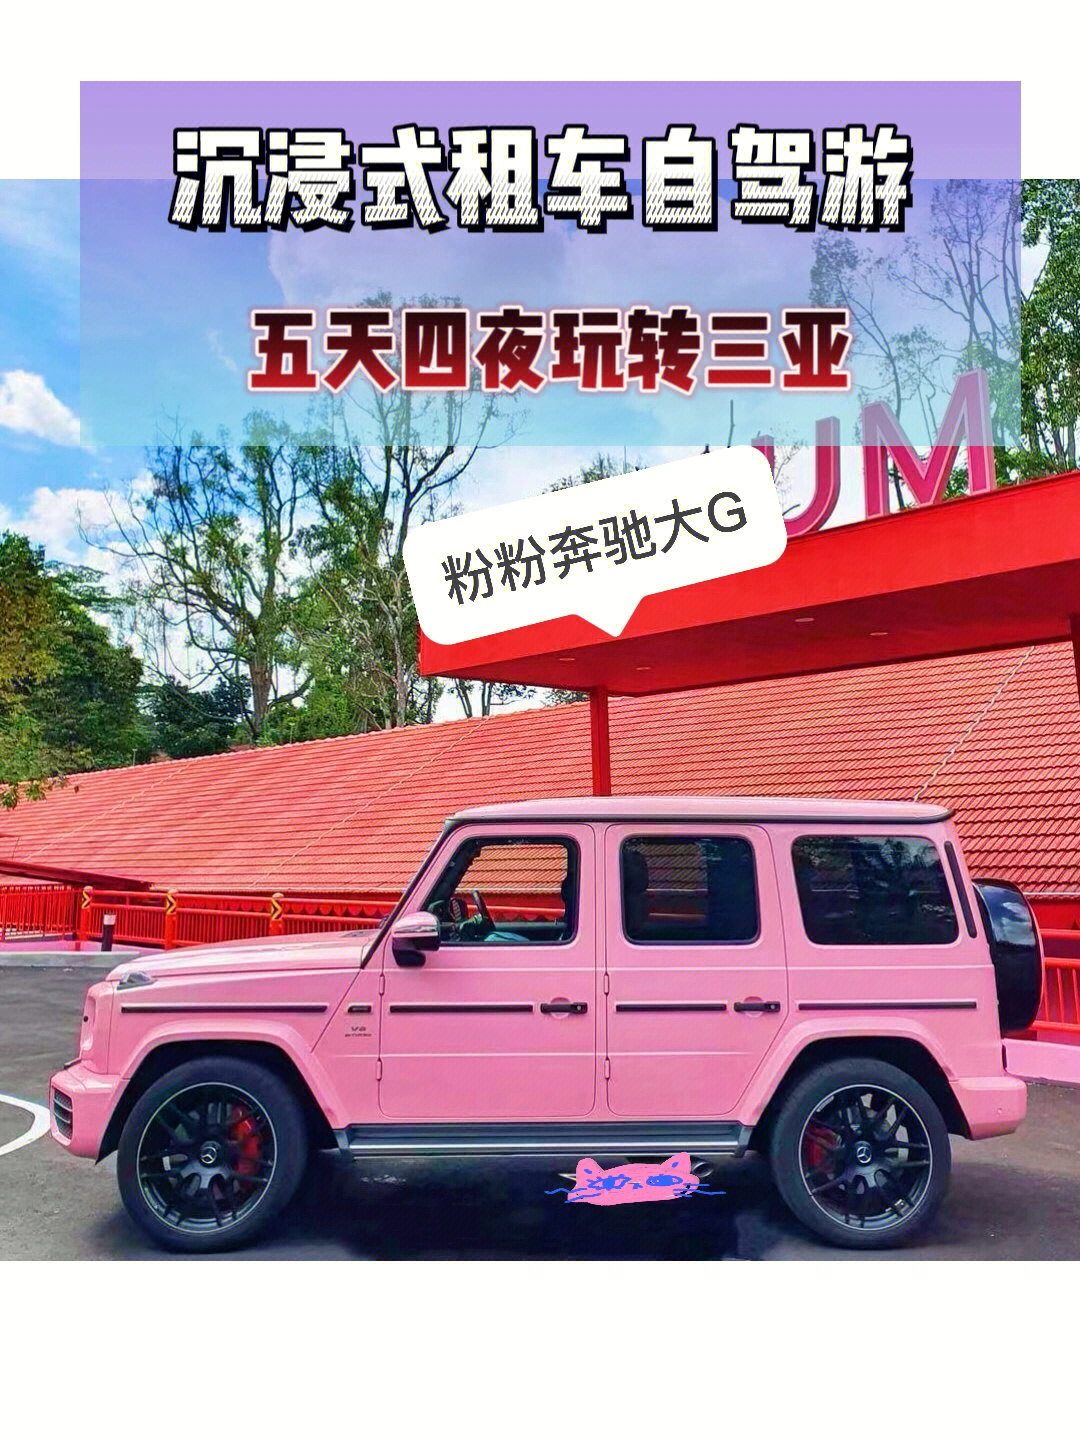 大g奔驰官方报价粉色图片